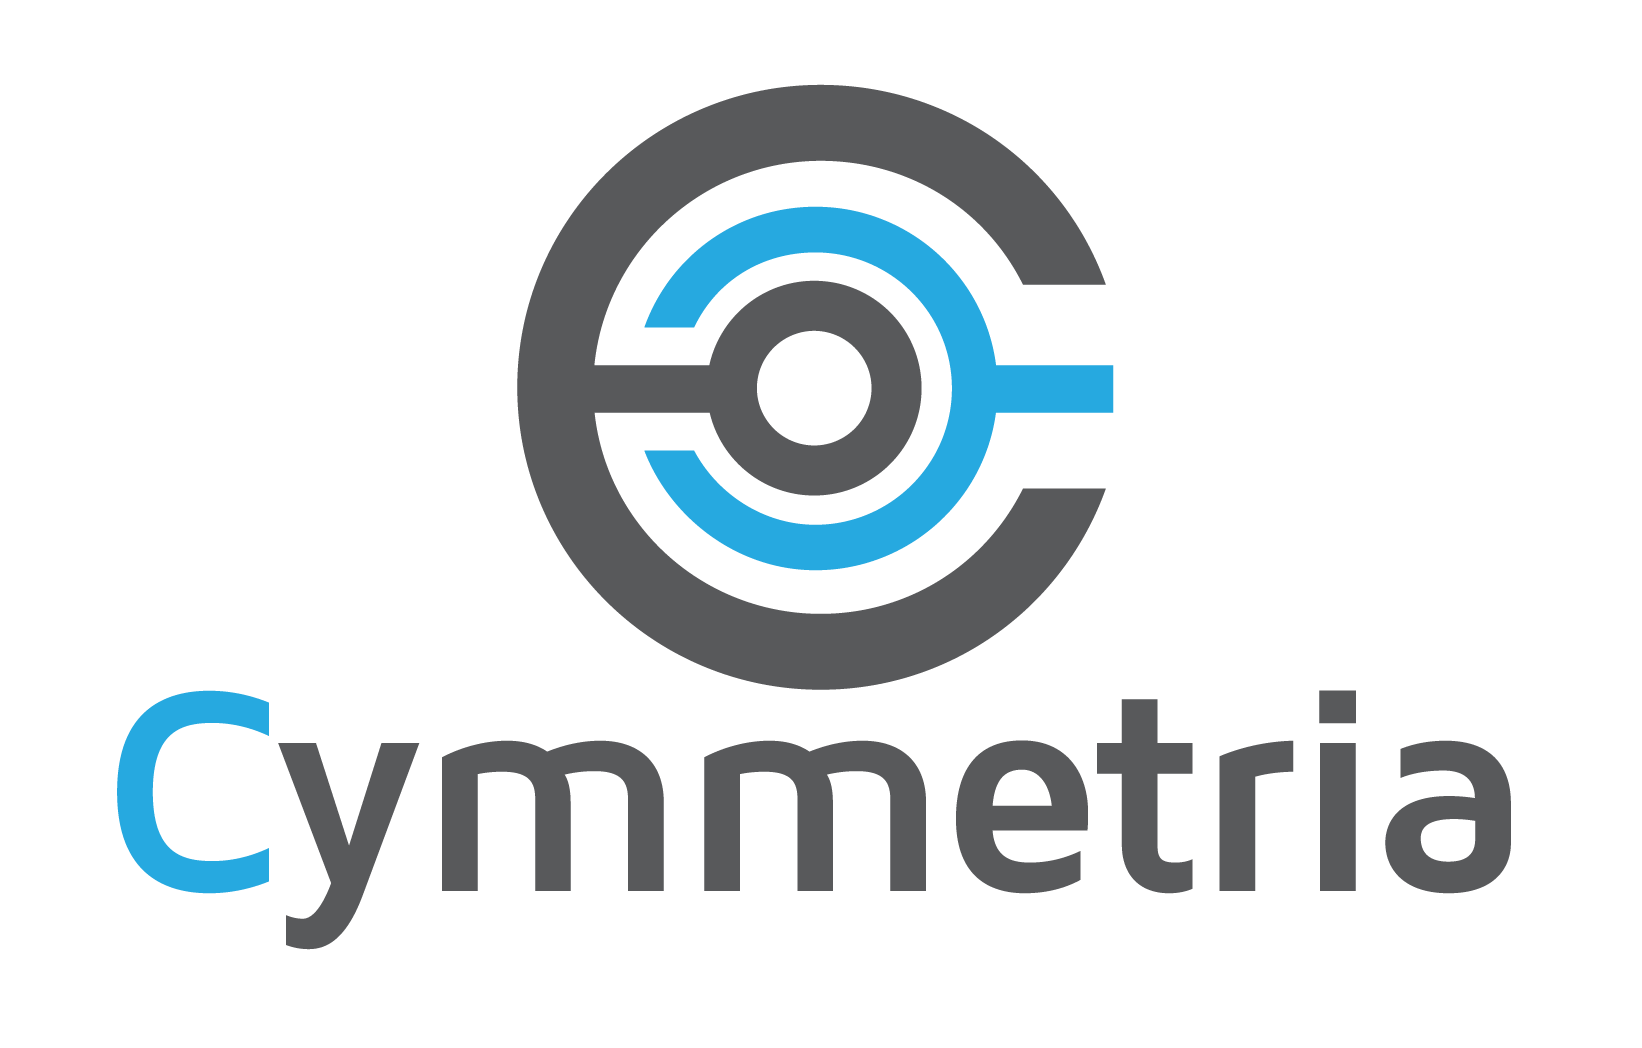 Cymmetria